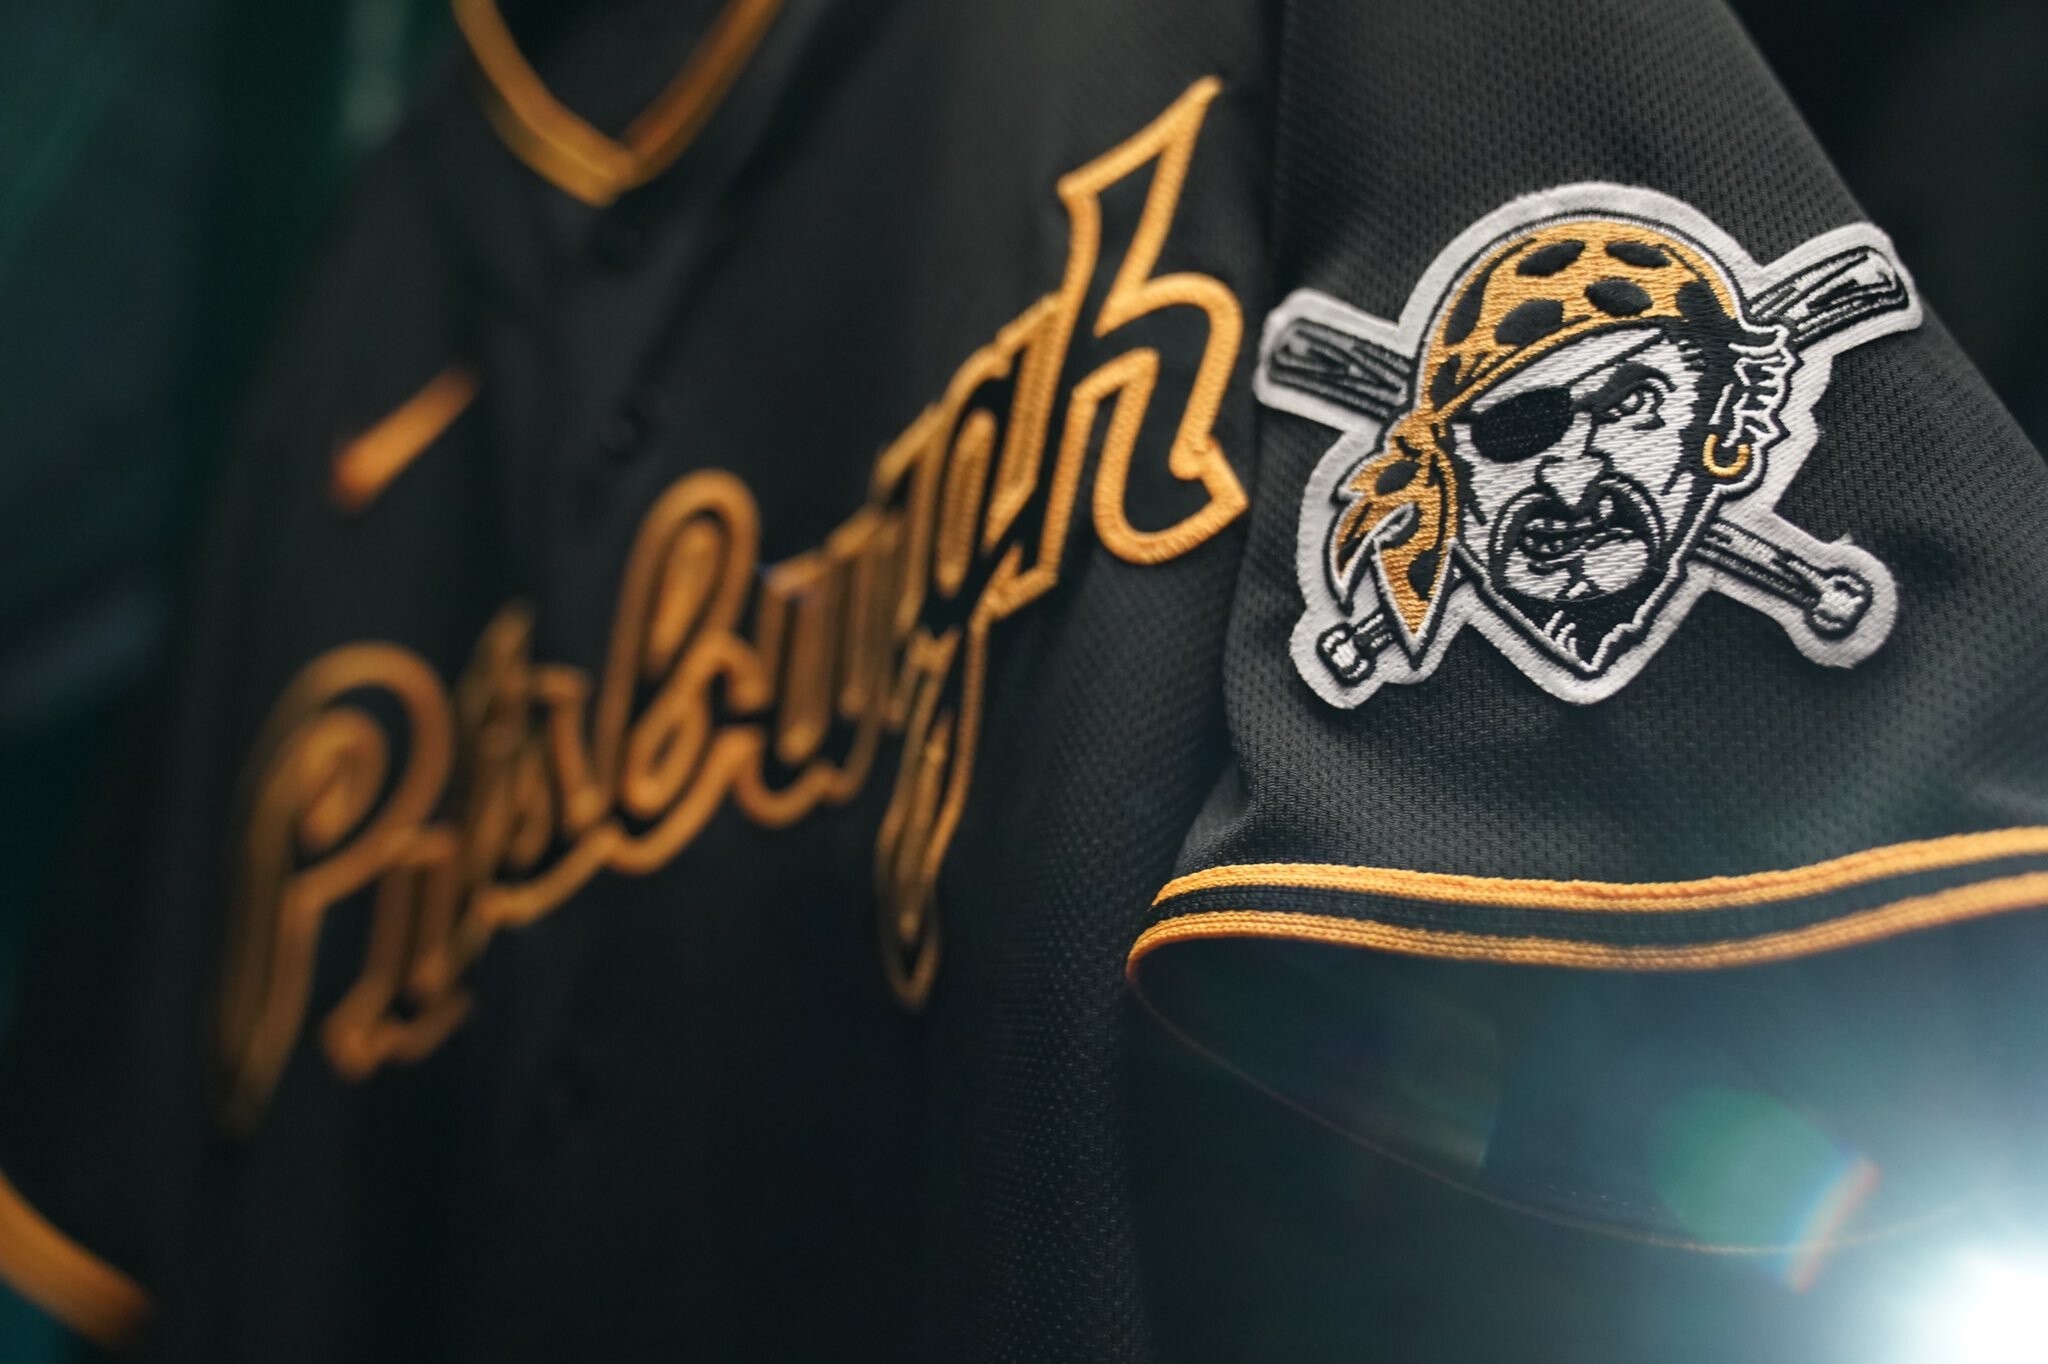 Pirates unveil new City Connect uniforms